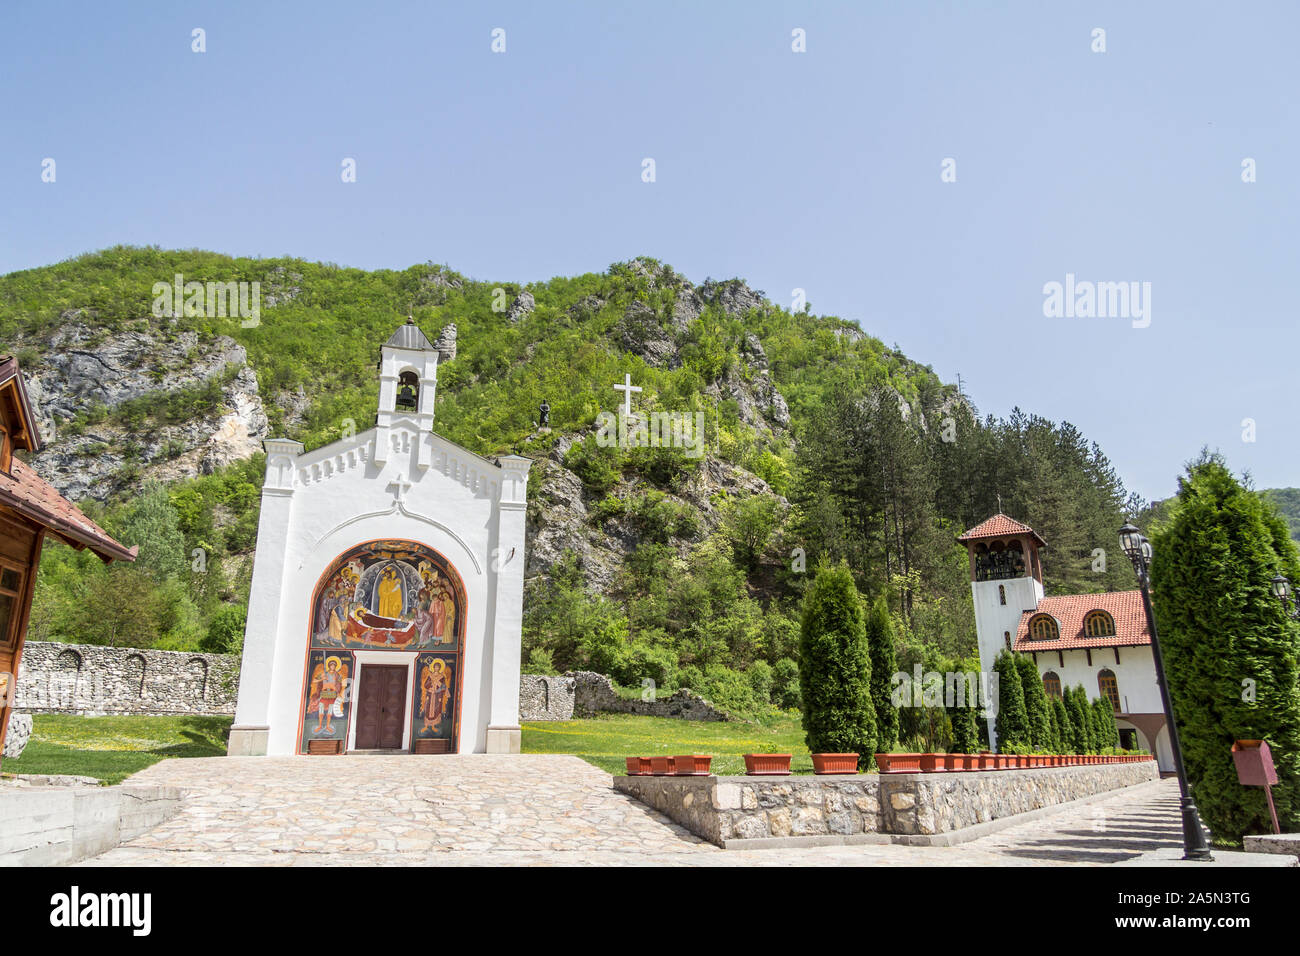 DOBRUN, Bosnie-herzégovine - 6 mai 2015 : église du monastère Dobrun en Bosnie, également appelé Manastir Dobrun, c'est un orthodoxe serbe médiévale Banque D'Images